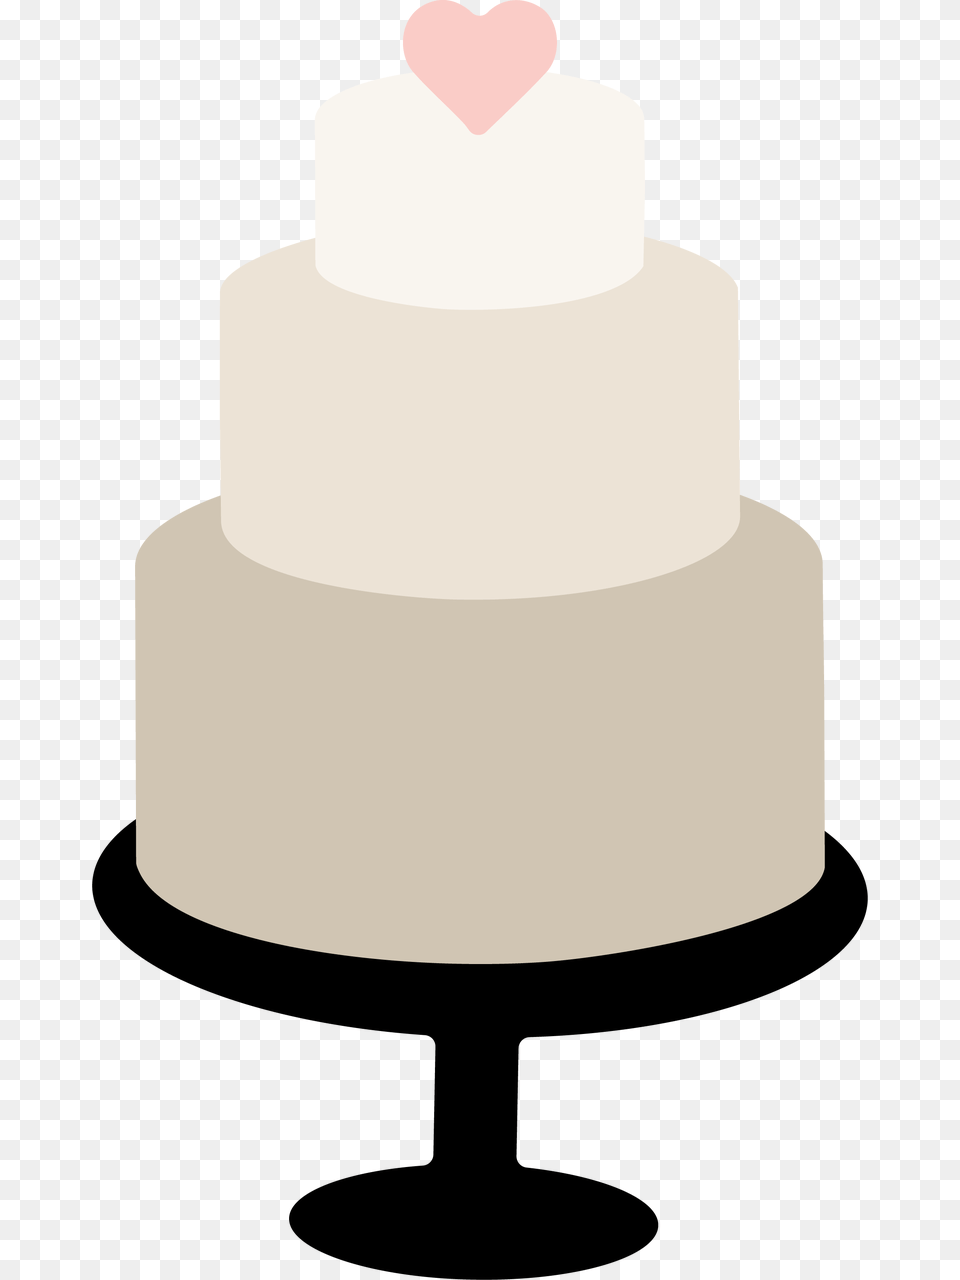 Wedding Cake Svg Cut File Birthday Cake, Dessert, Food, Wedding Cake Free Png